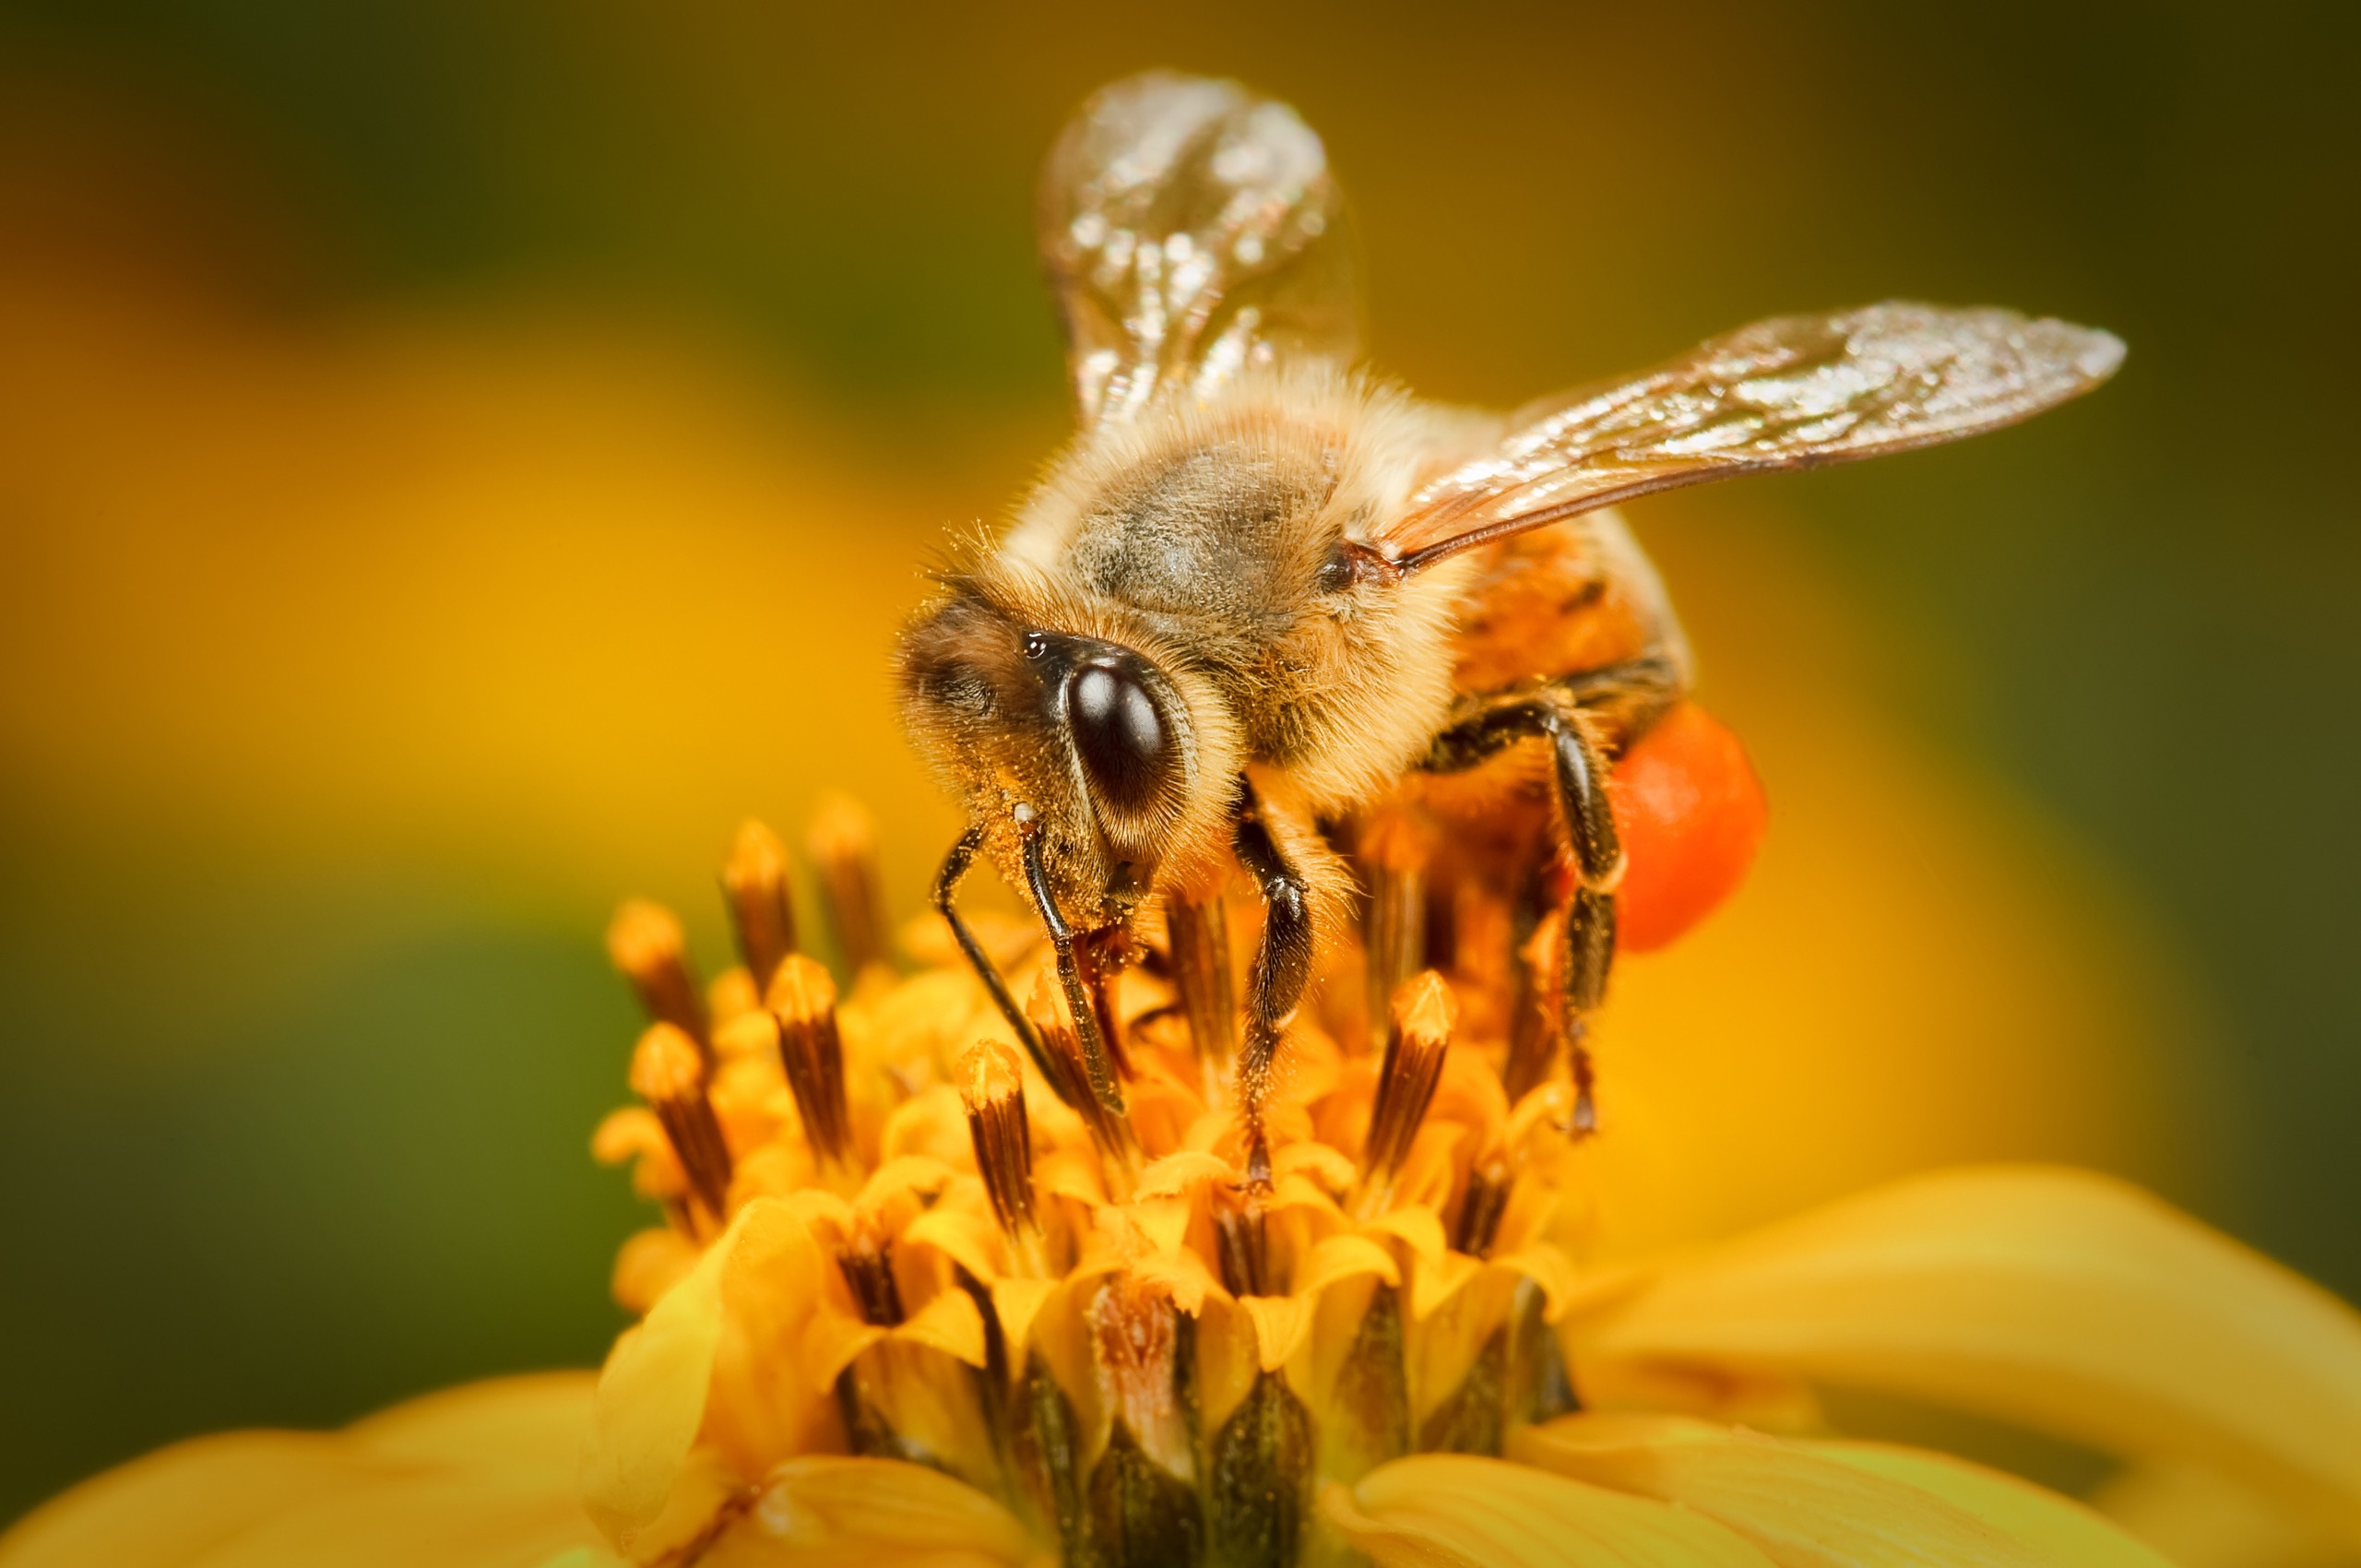 animals, bees - desktop wallpaper